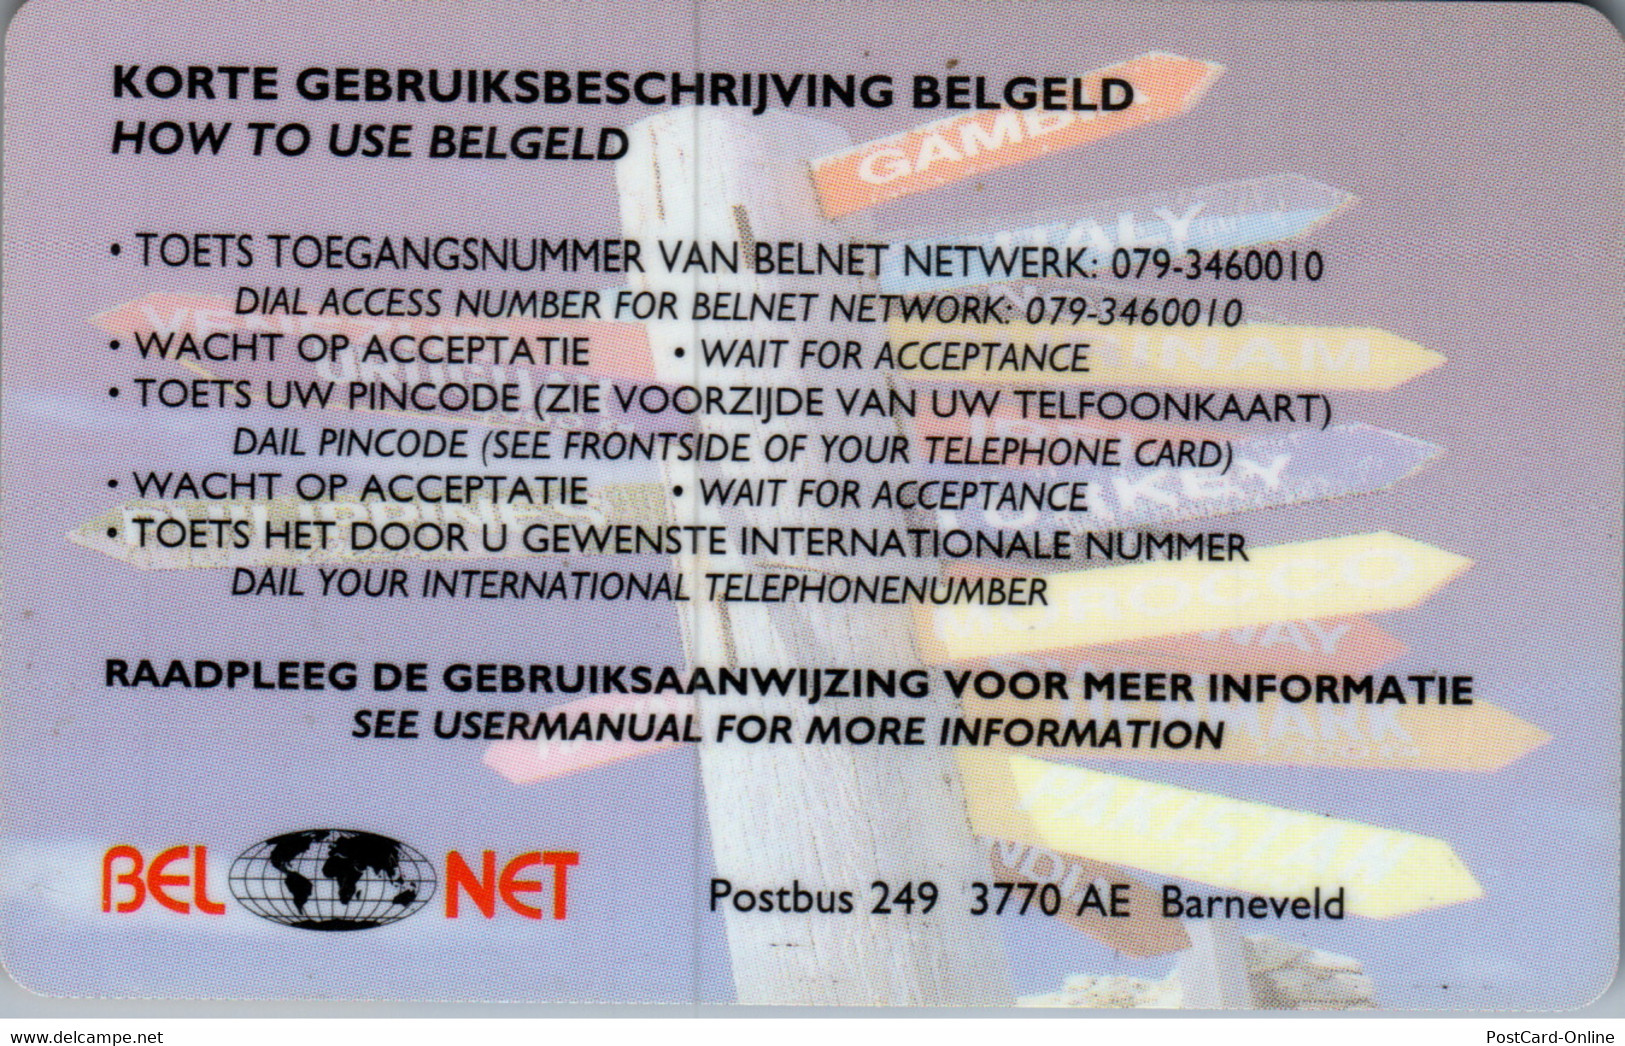 32521 - Belgien - Bel Net - Senza Chip